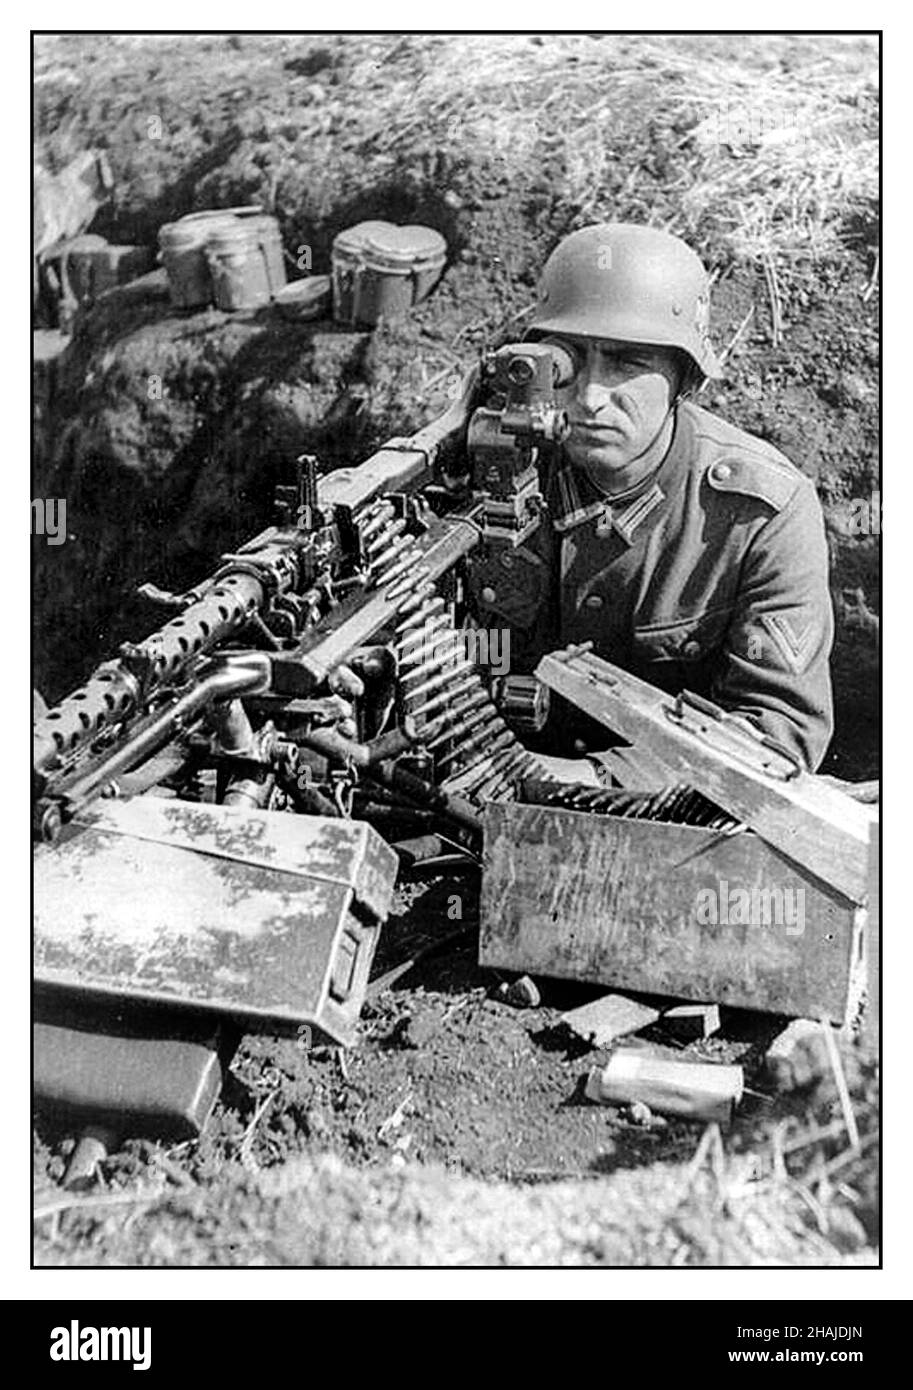 Nazi MG-42 Maschinengewehr WW2 Propaganda Image Wehrmachtsarmee Nazi-Soldat im Grabenauszug mit MG-42 Maschinengewehr mit optischer Sicht, Munitionsboxen in der Nähe Stockfoto